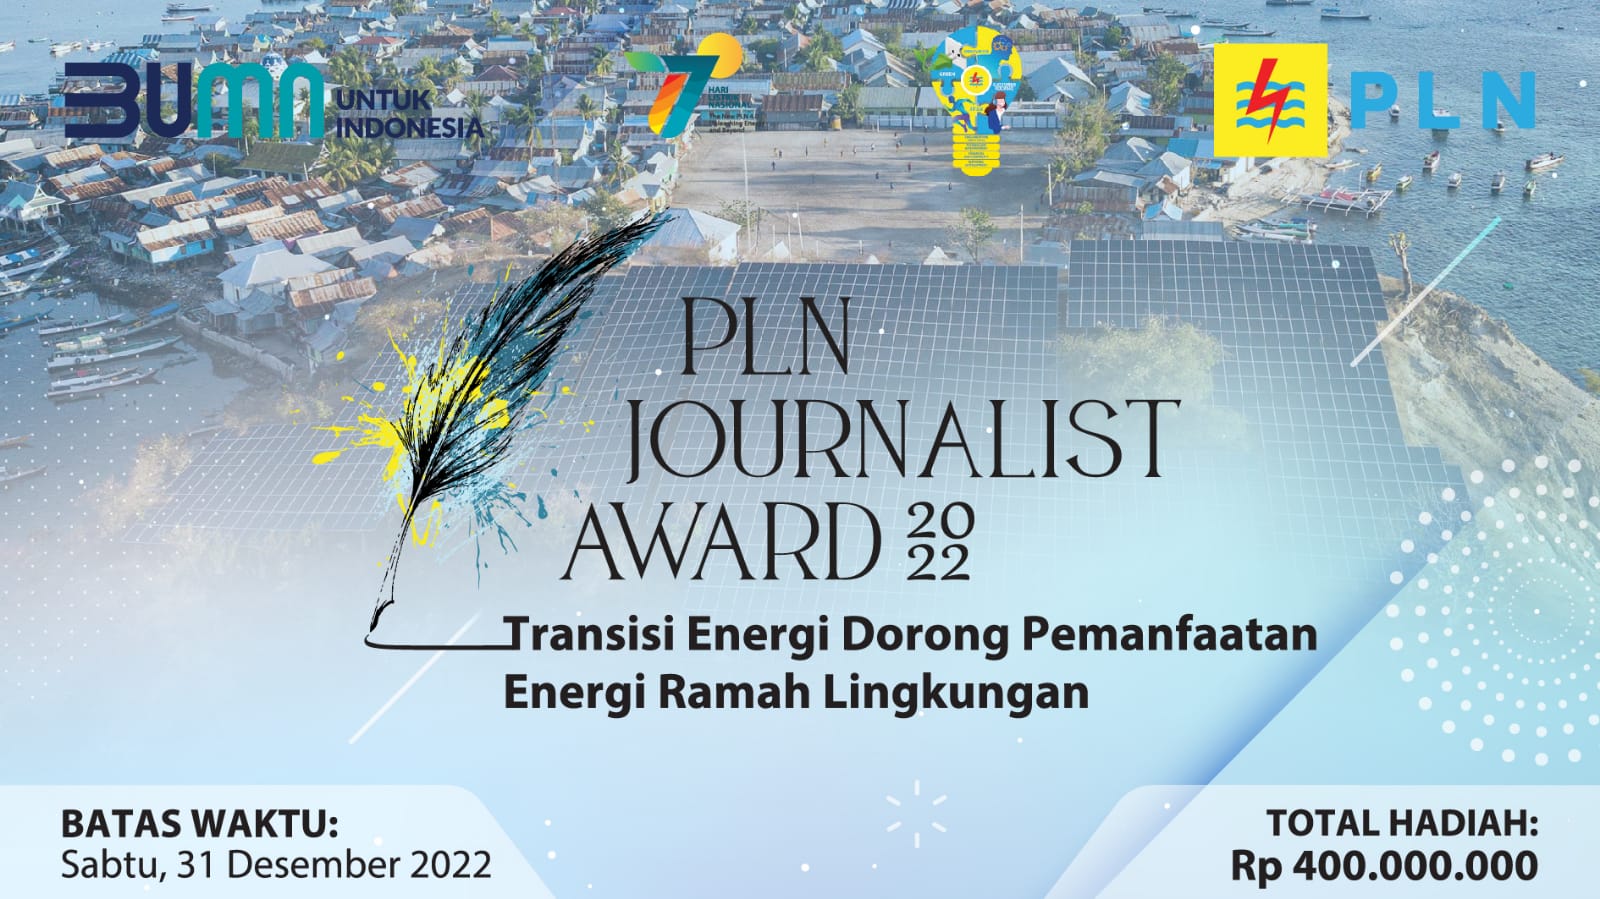 PLN Journalist Award 2022. (Foto: PLN)